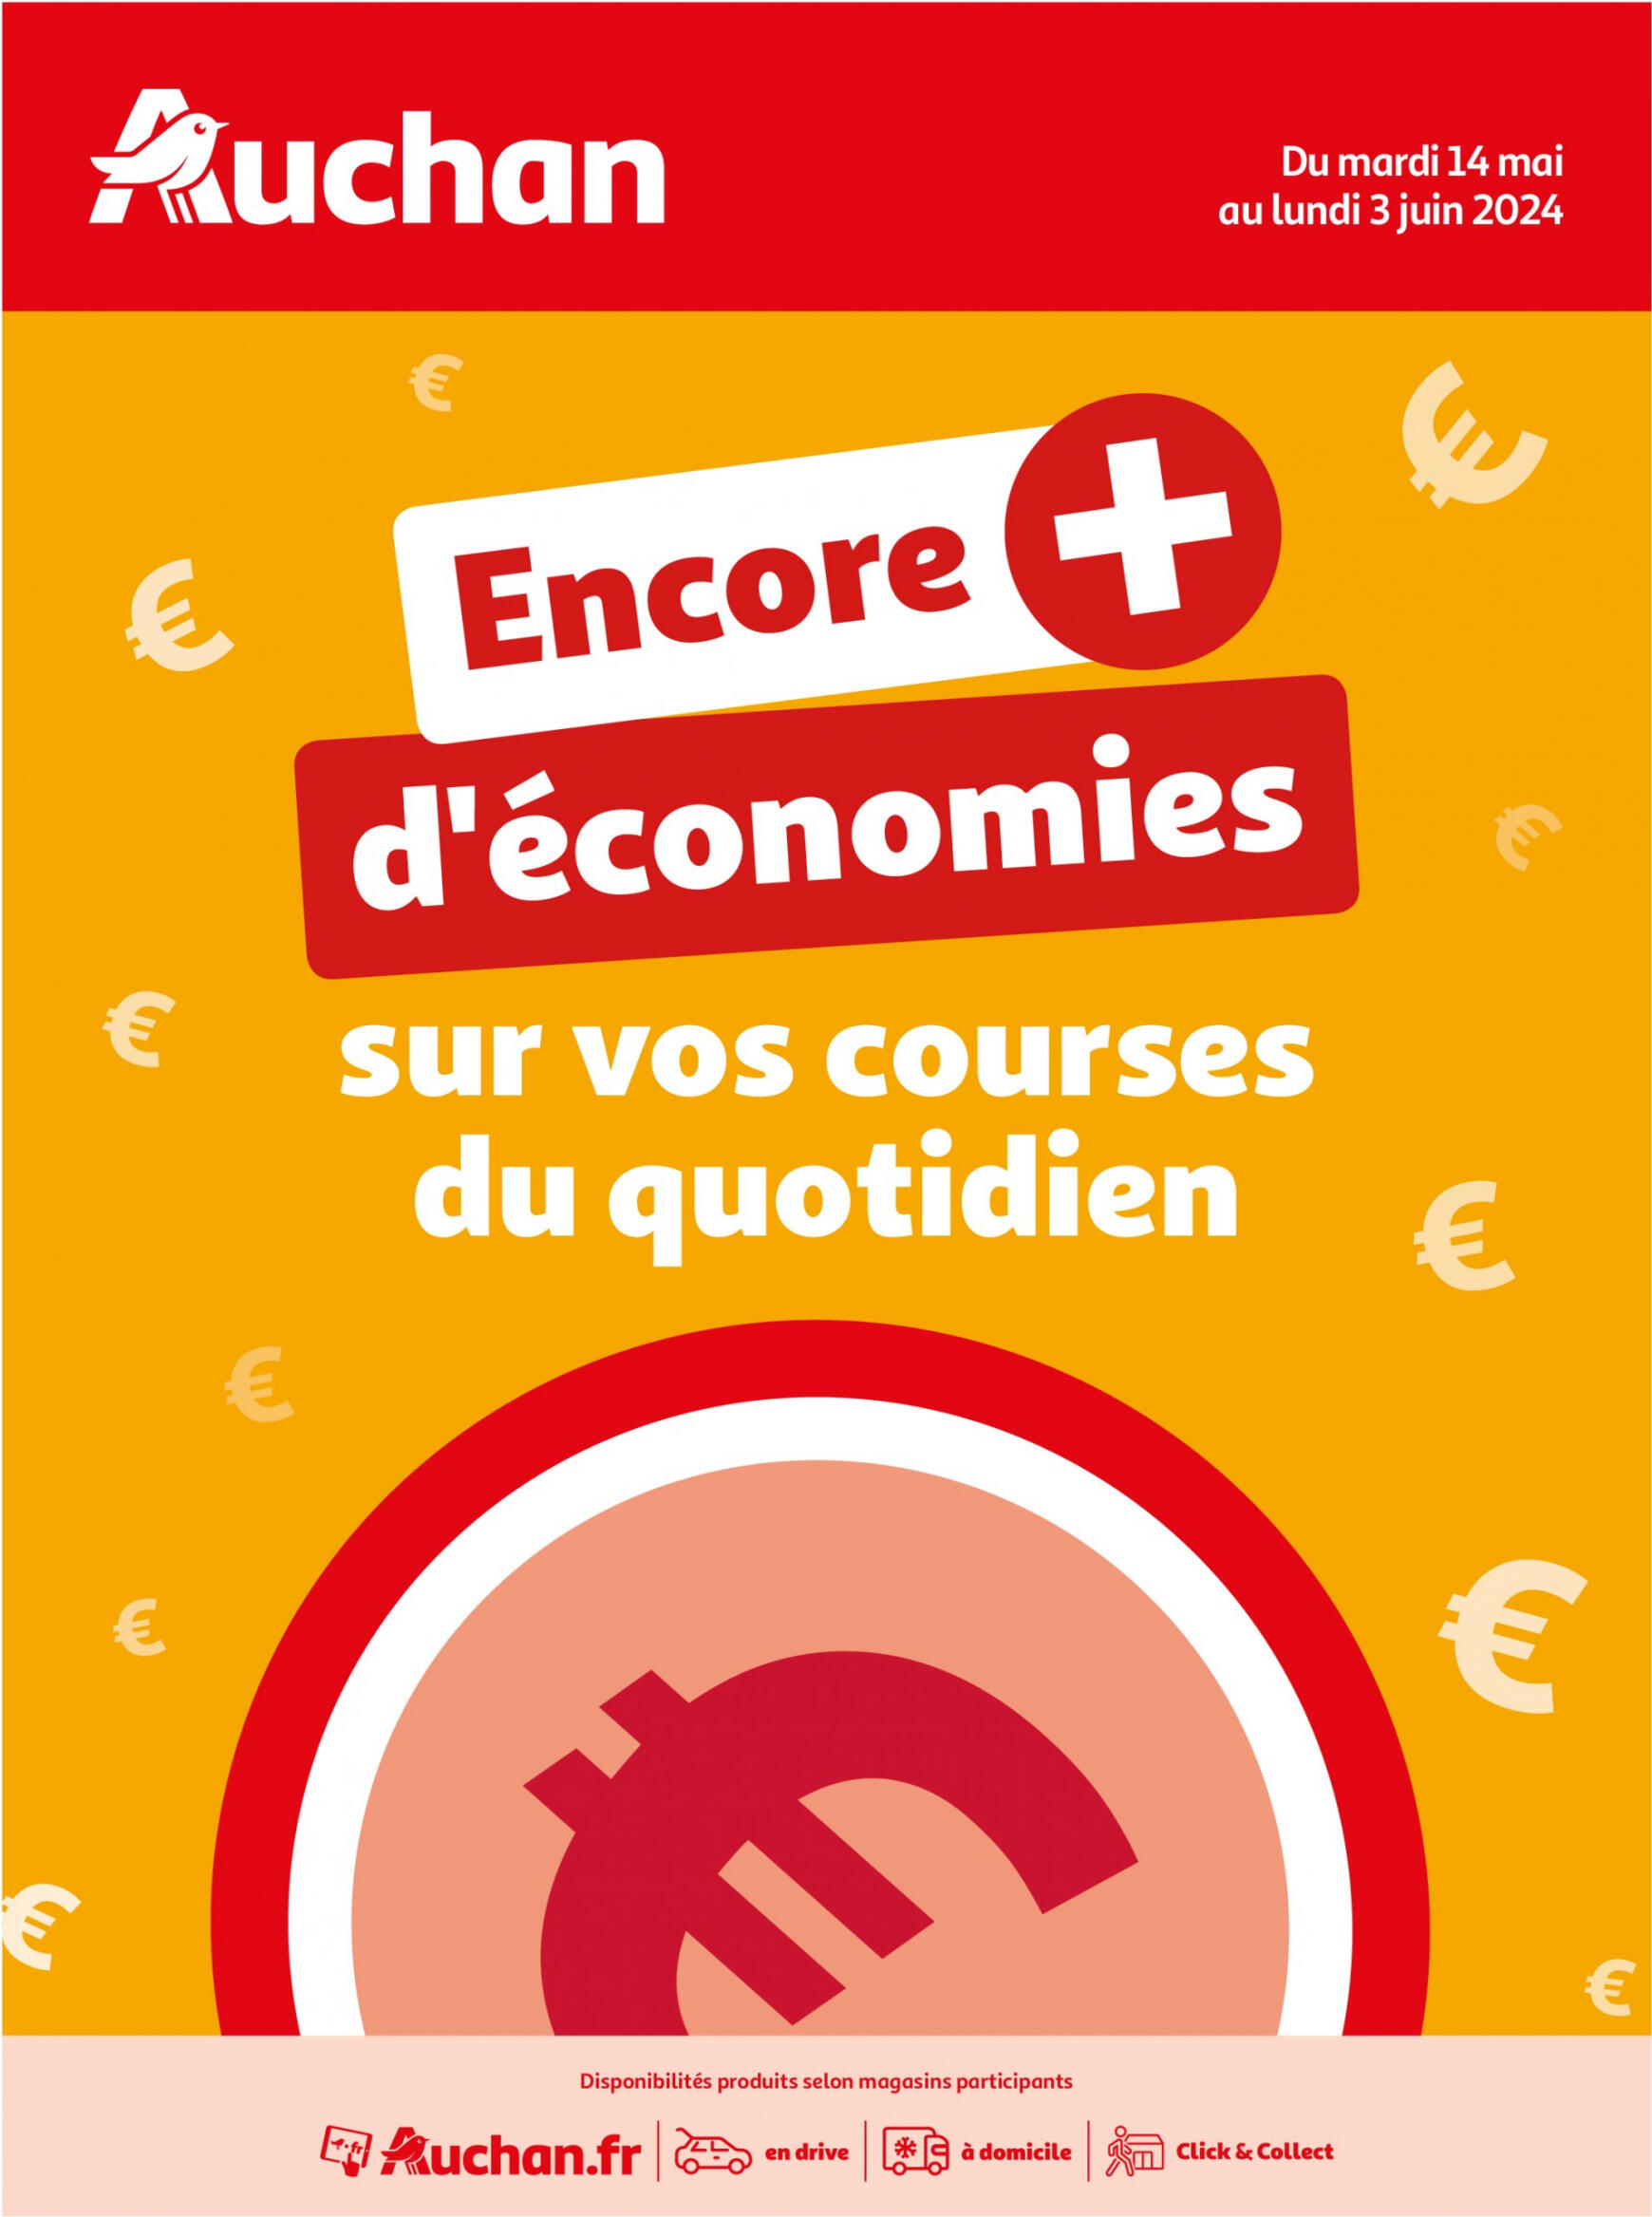 auchan - Auchan - Des économies au quotidien folder huidig 14.05. - 03.06. - page: 1